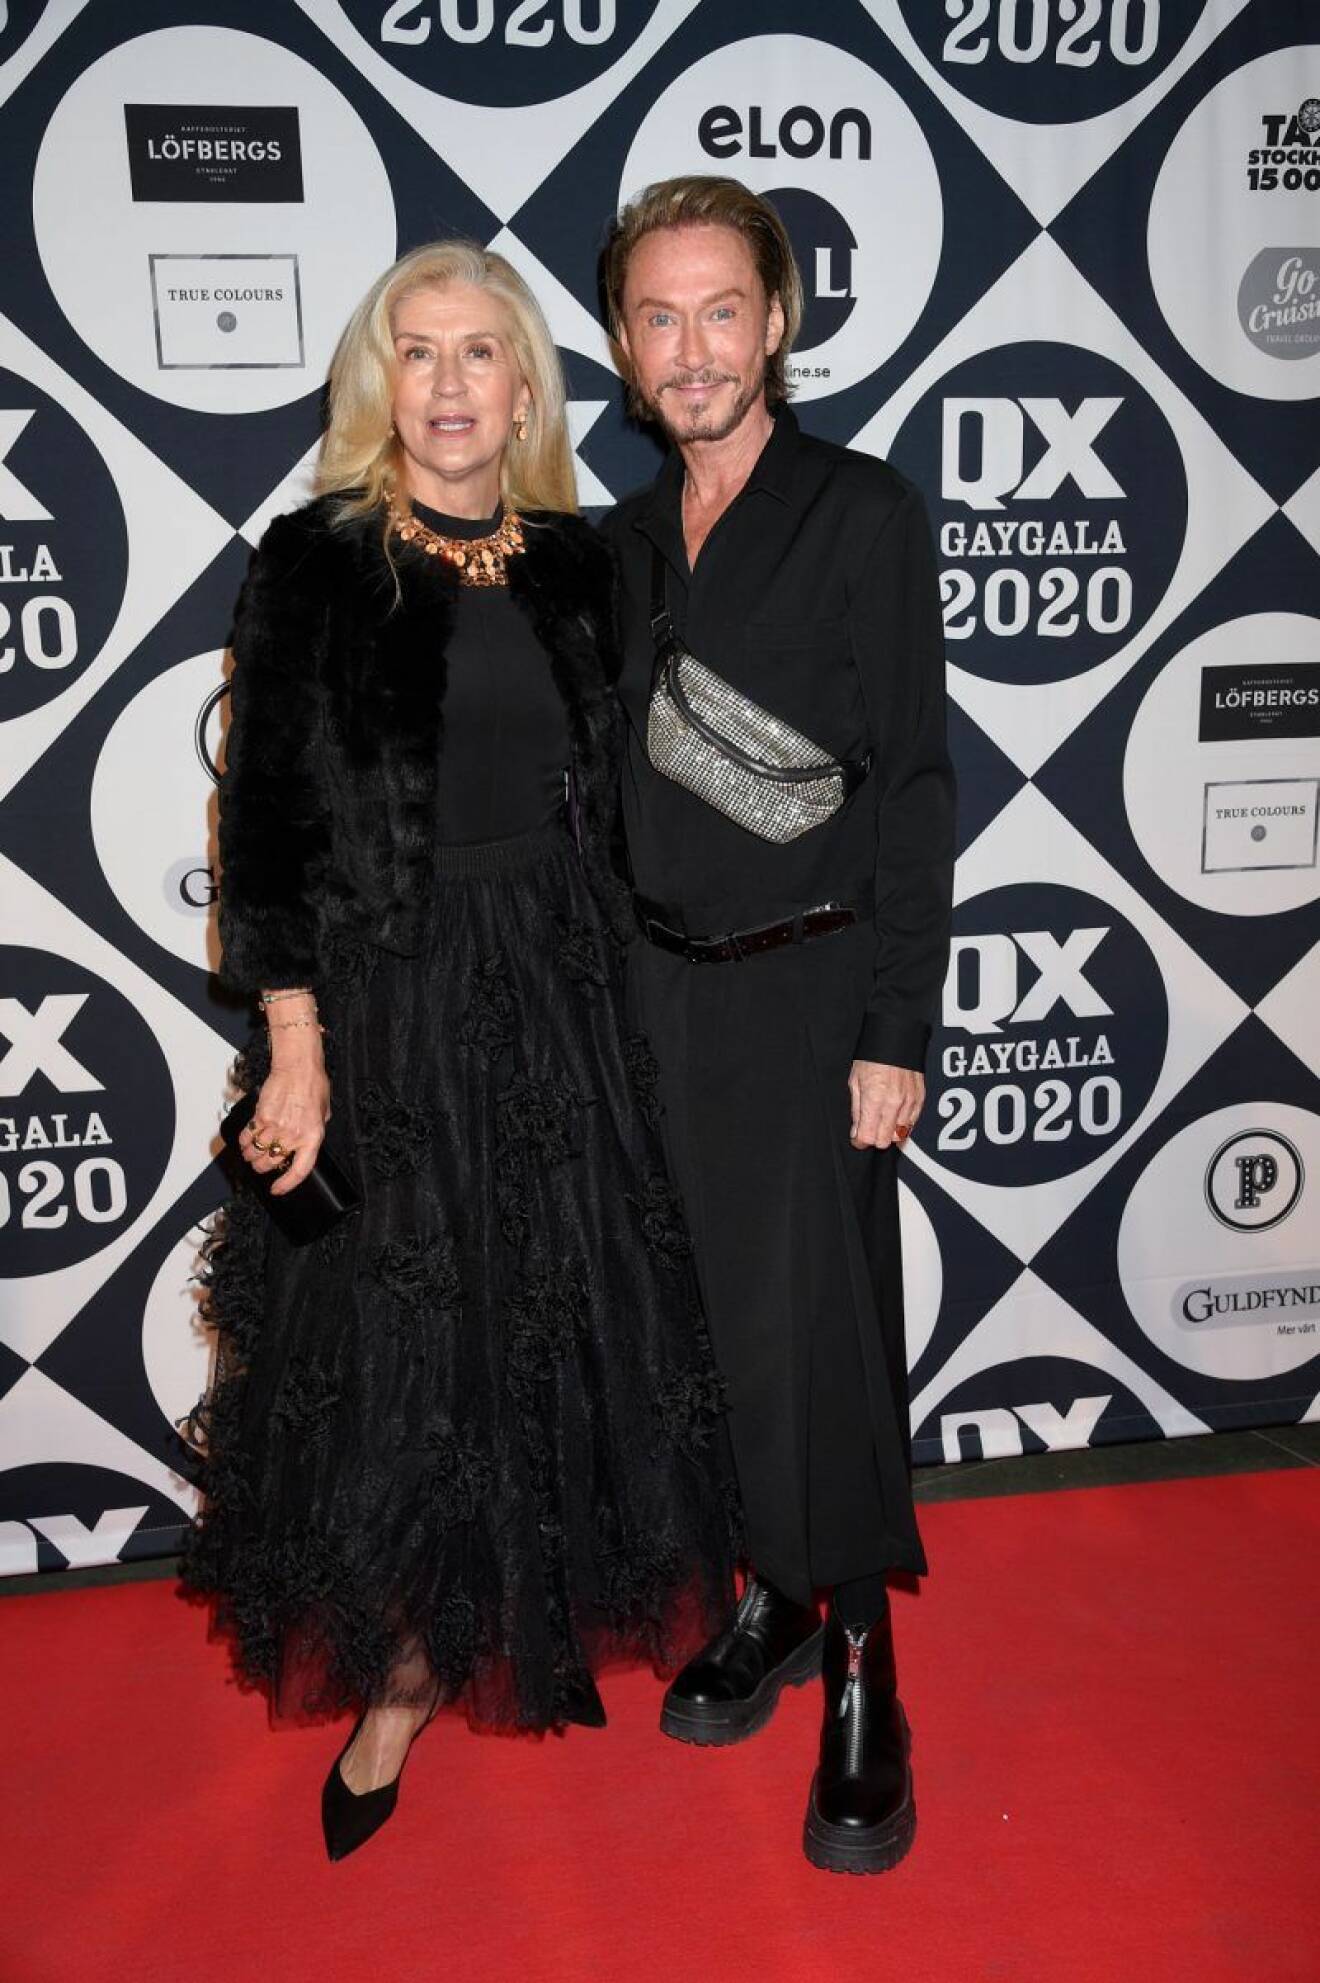 Tina Törnquist och Christer Lindarw på röda mattan på QX-galan 2020